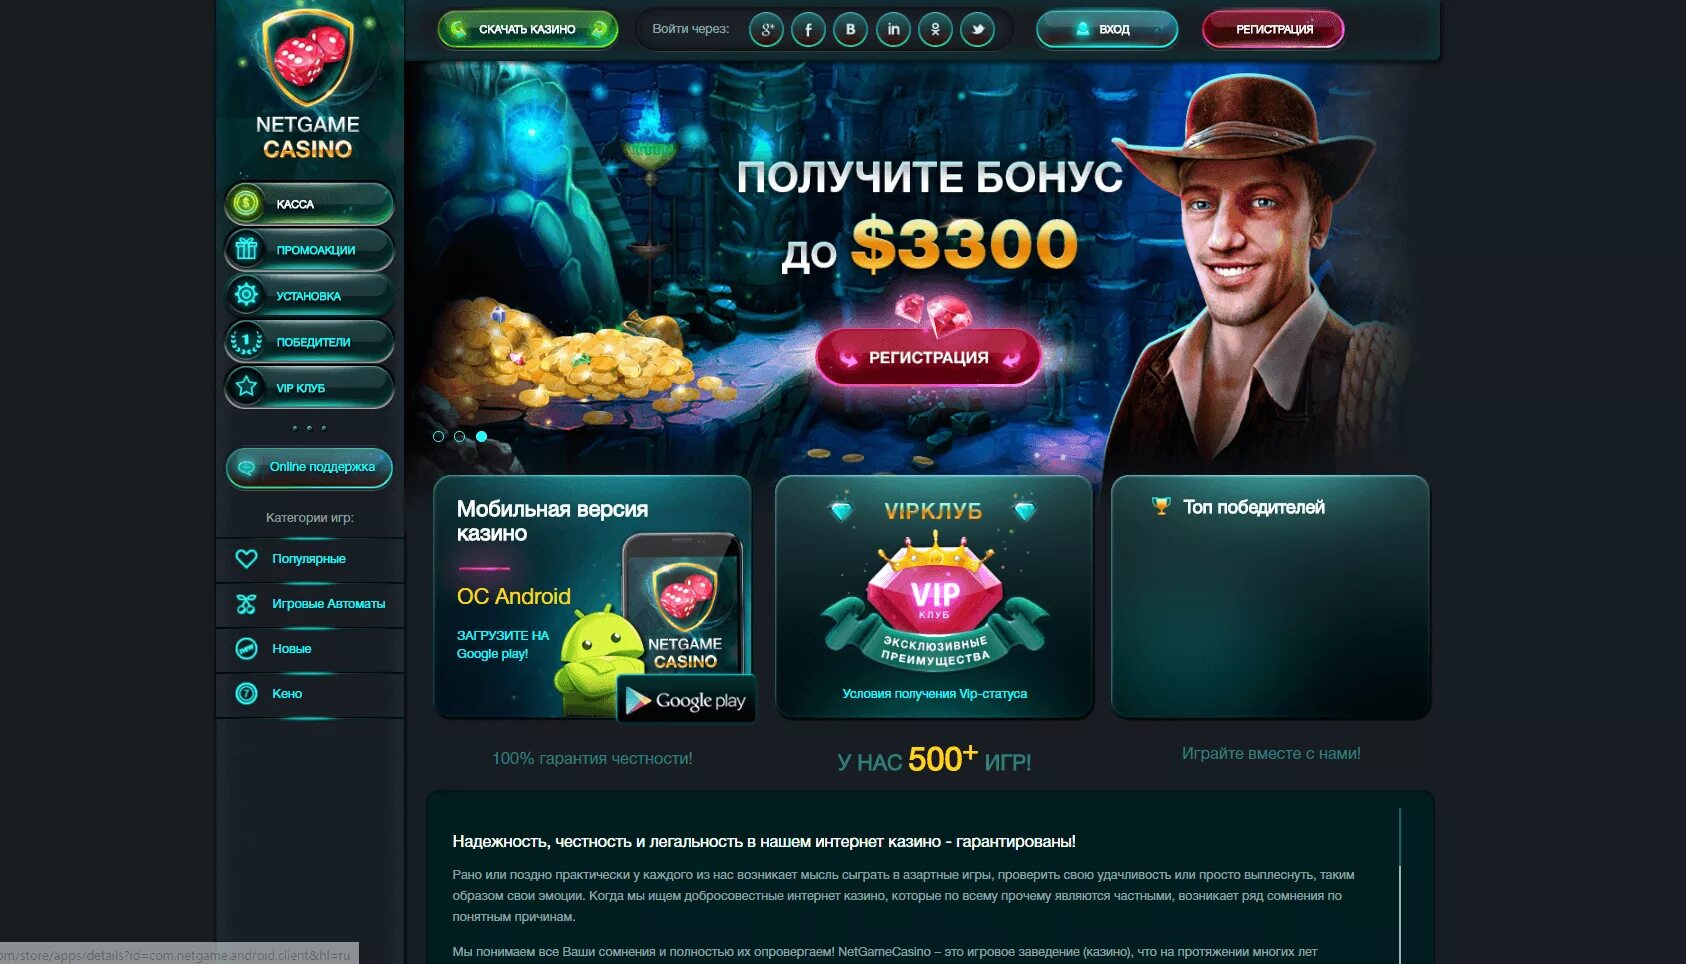 Casino сайты. Список казино. Нетгейм казино онлайн. Русские порталы казино. Онлайн казино NETGAME.